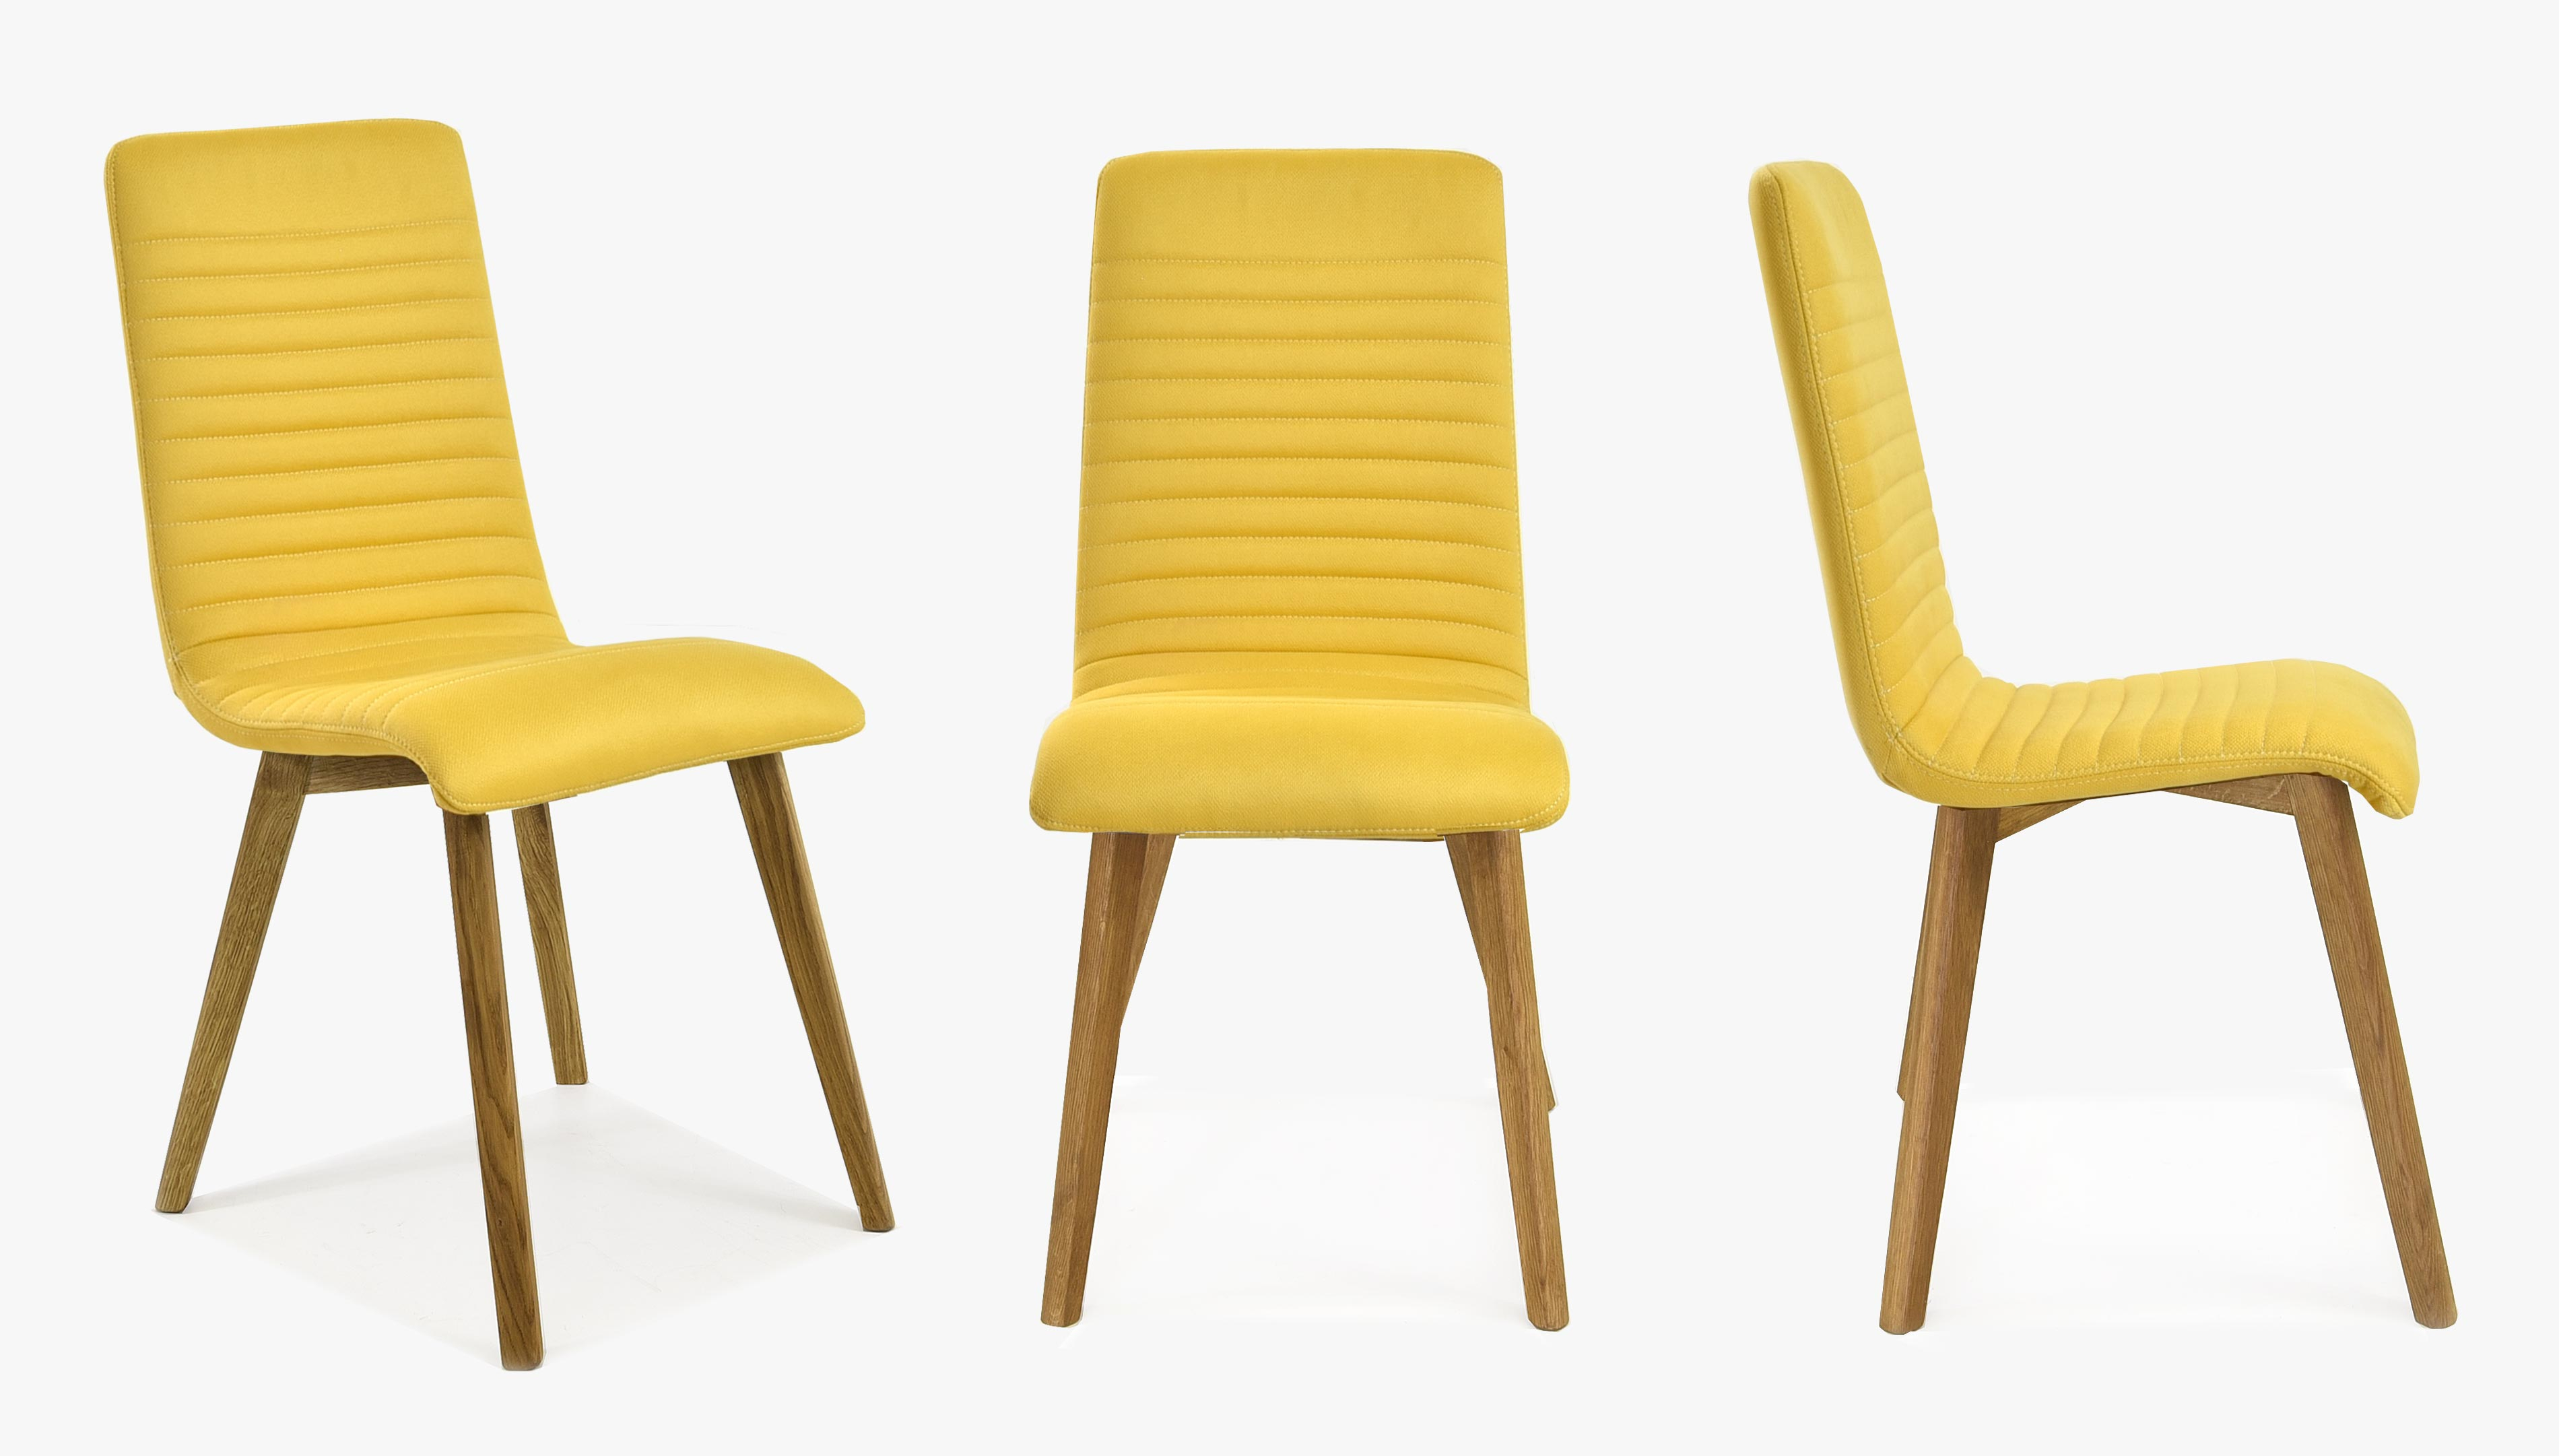 Moderní jídelní židle dub - žlutá , Arosa